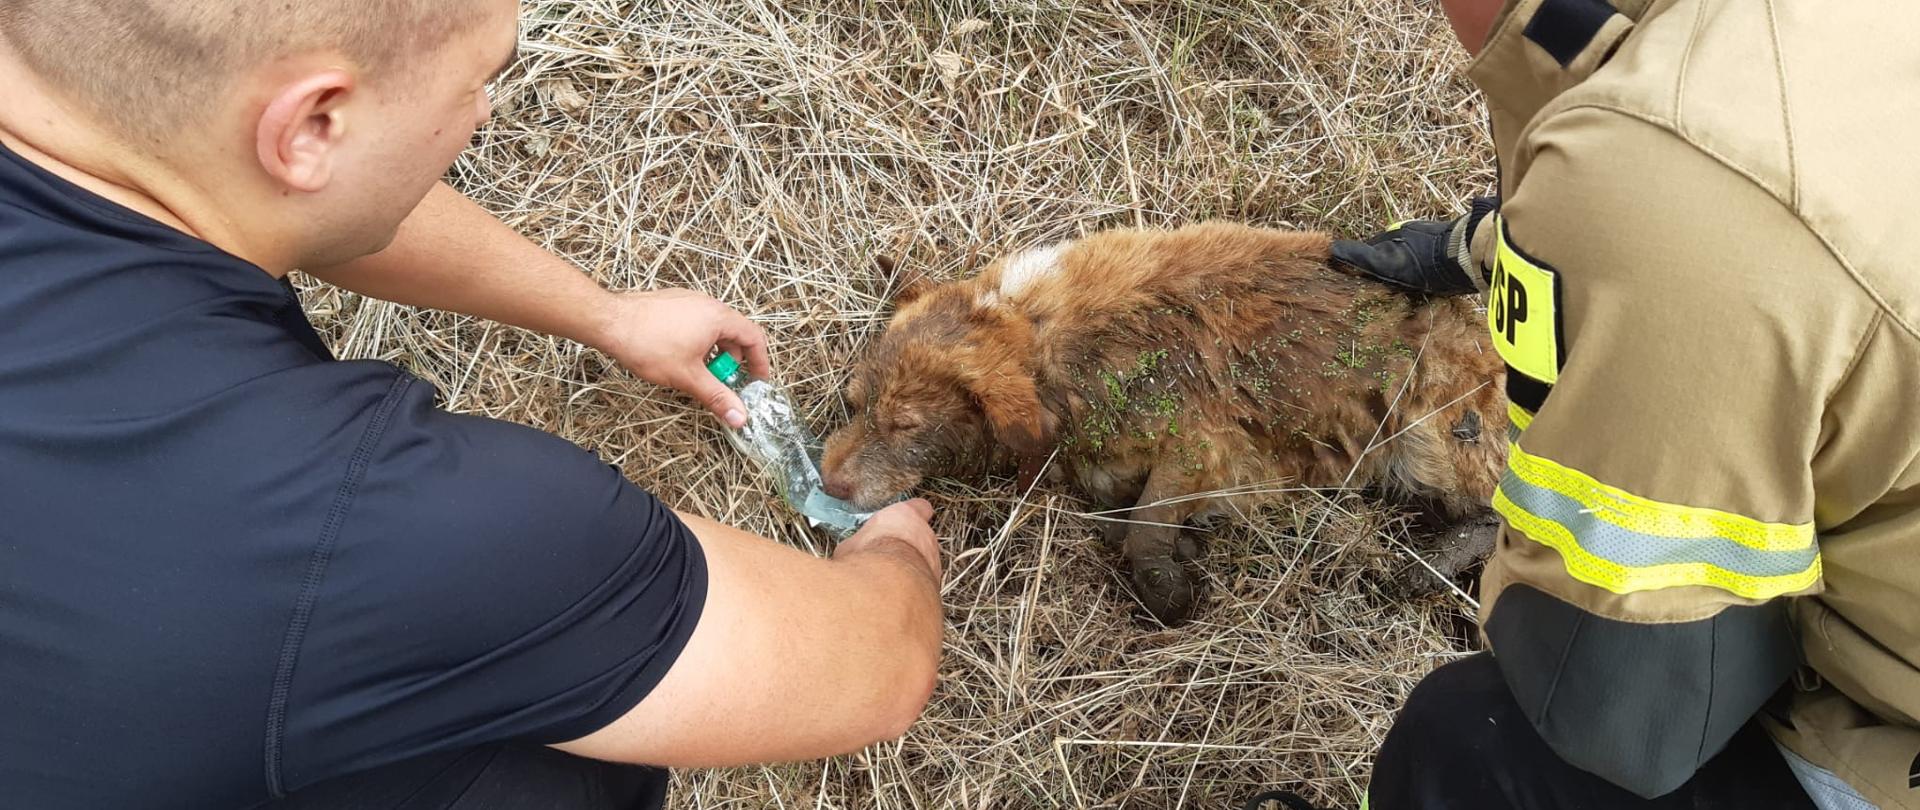 Strażacy pomagają rannemu psu który leży w suchej trawie. Z przeciętej plastikowej butelki dają mu wodę do picia.